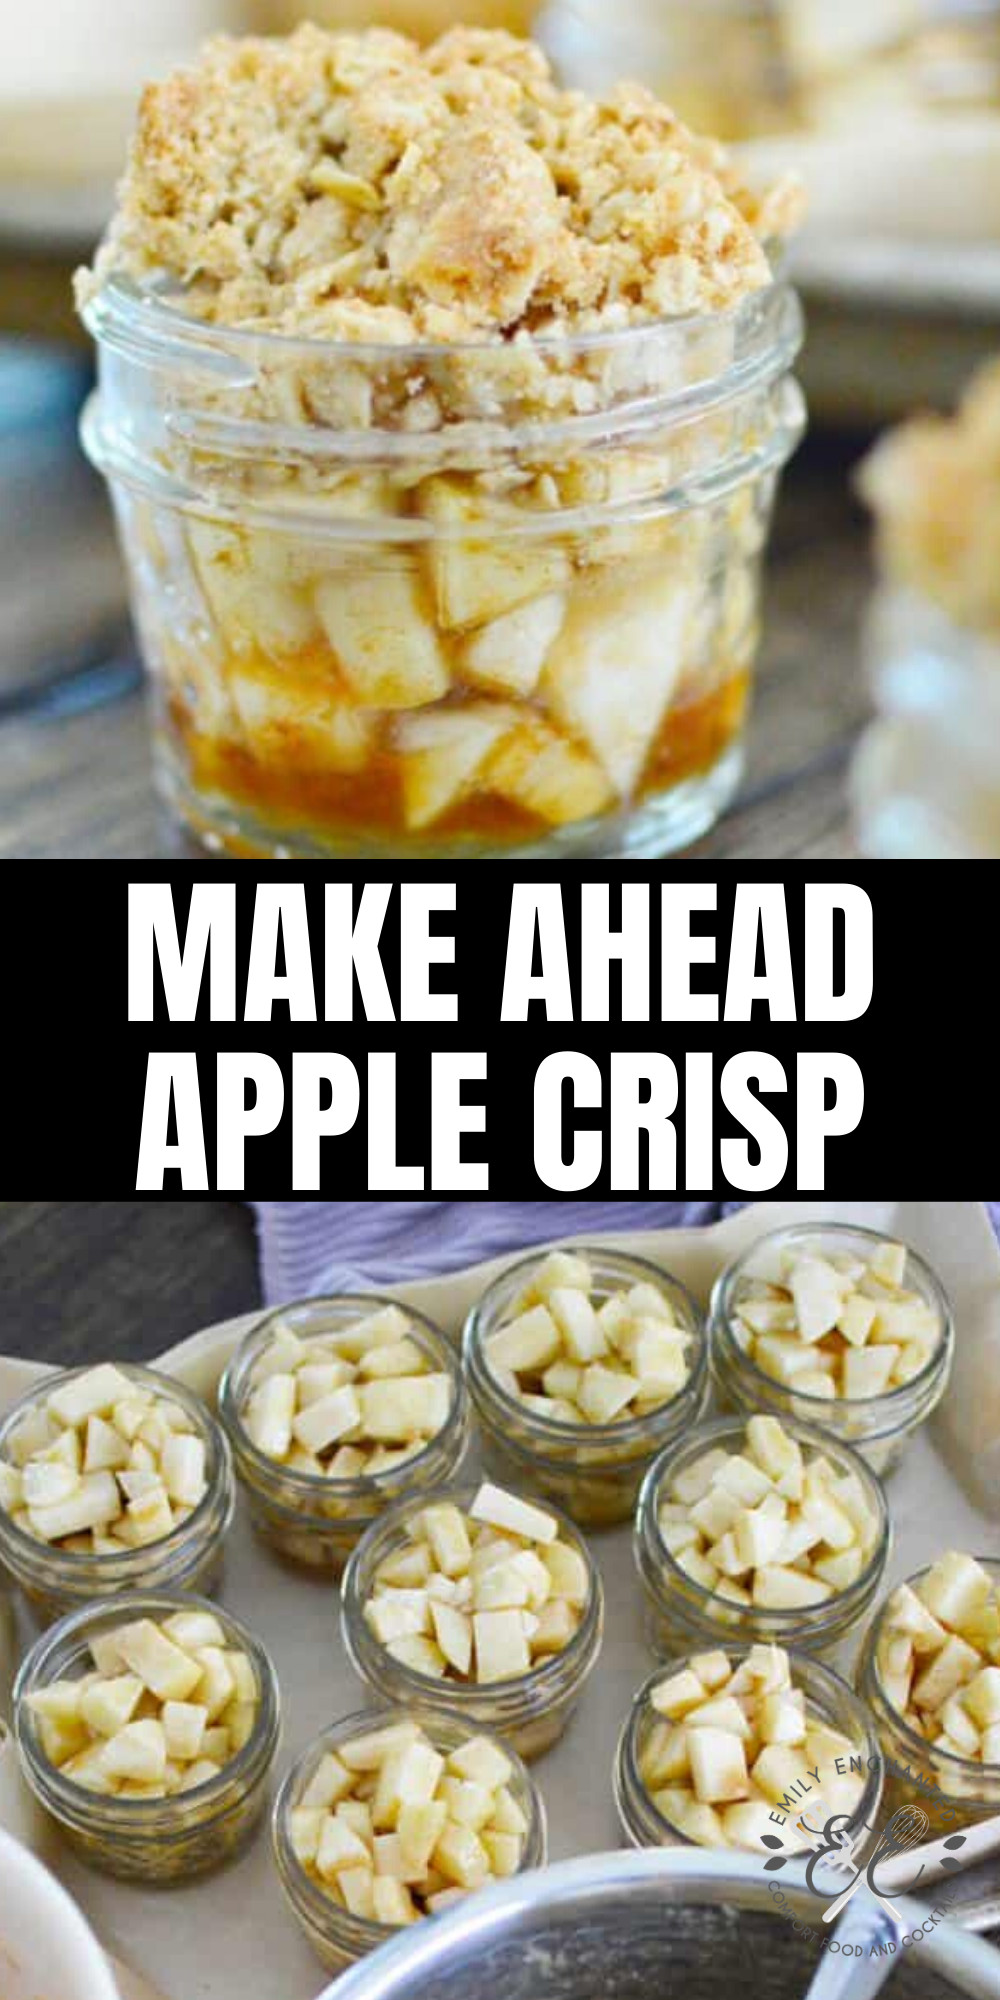 Make Ahead Mason Jar Desserts
 Make Ahead Mini Apple Crisp Dessert in Mason Jars are